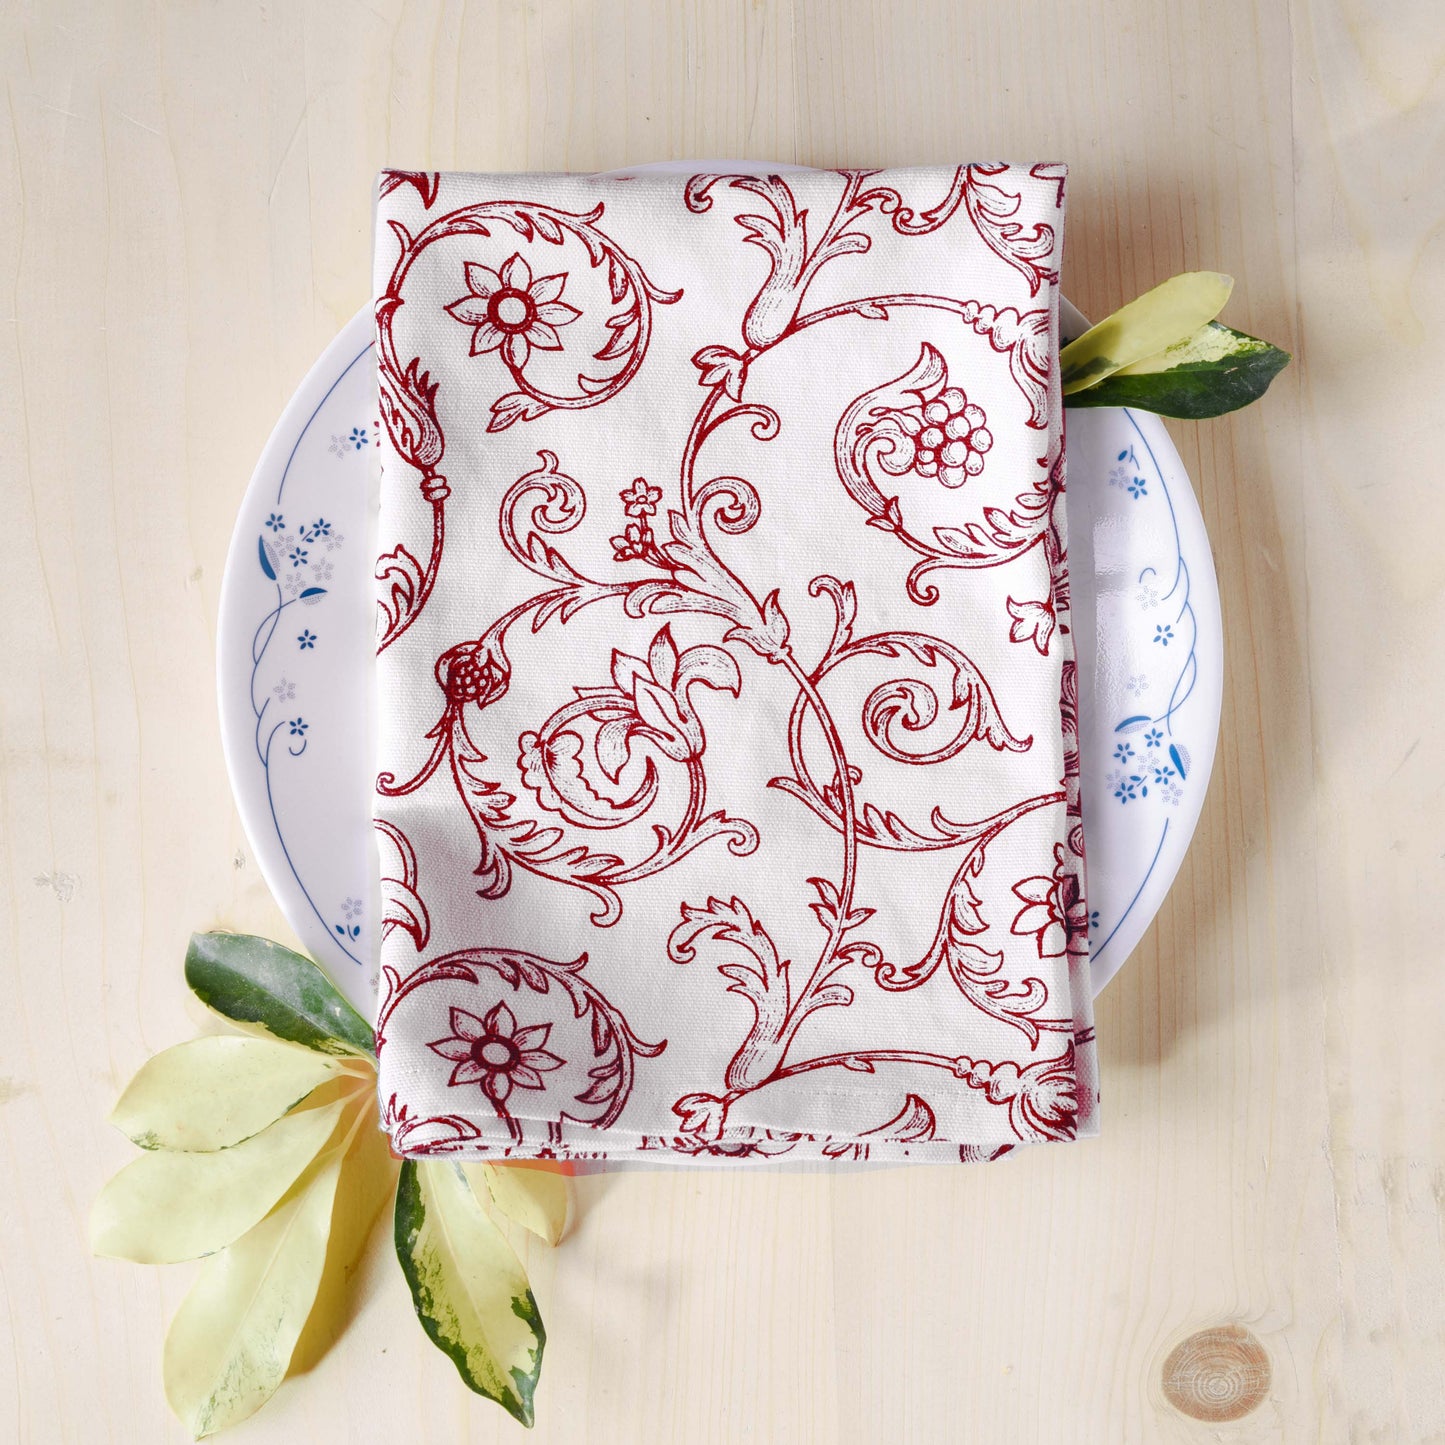 SWIRL Kitchen towel, red swirl print on white, victorian pattern, 100% cotton, size 20"X28"